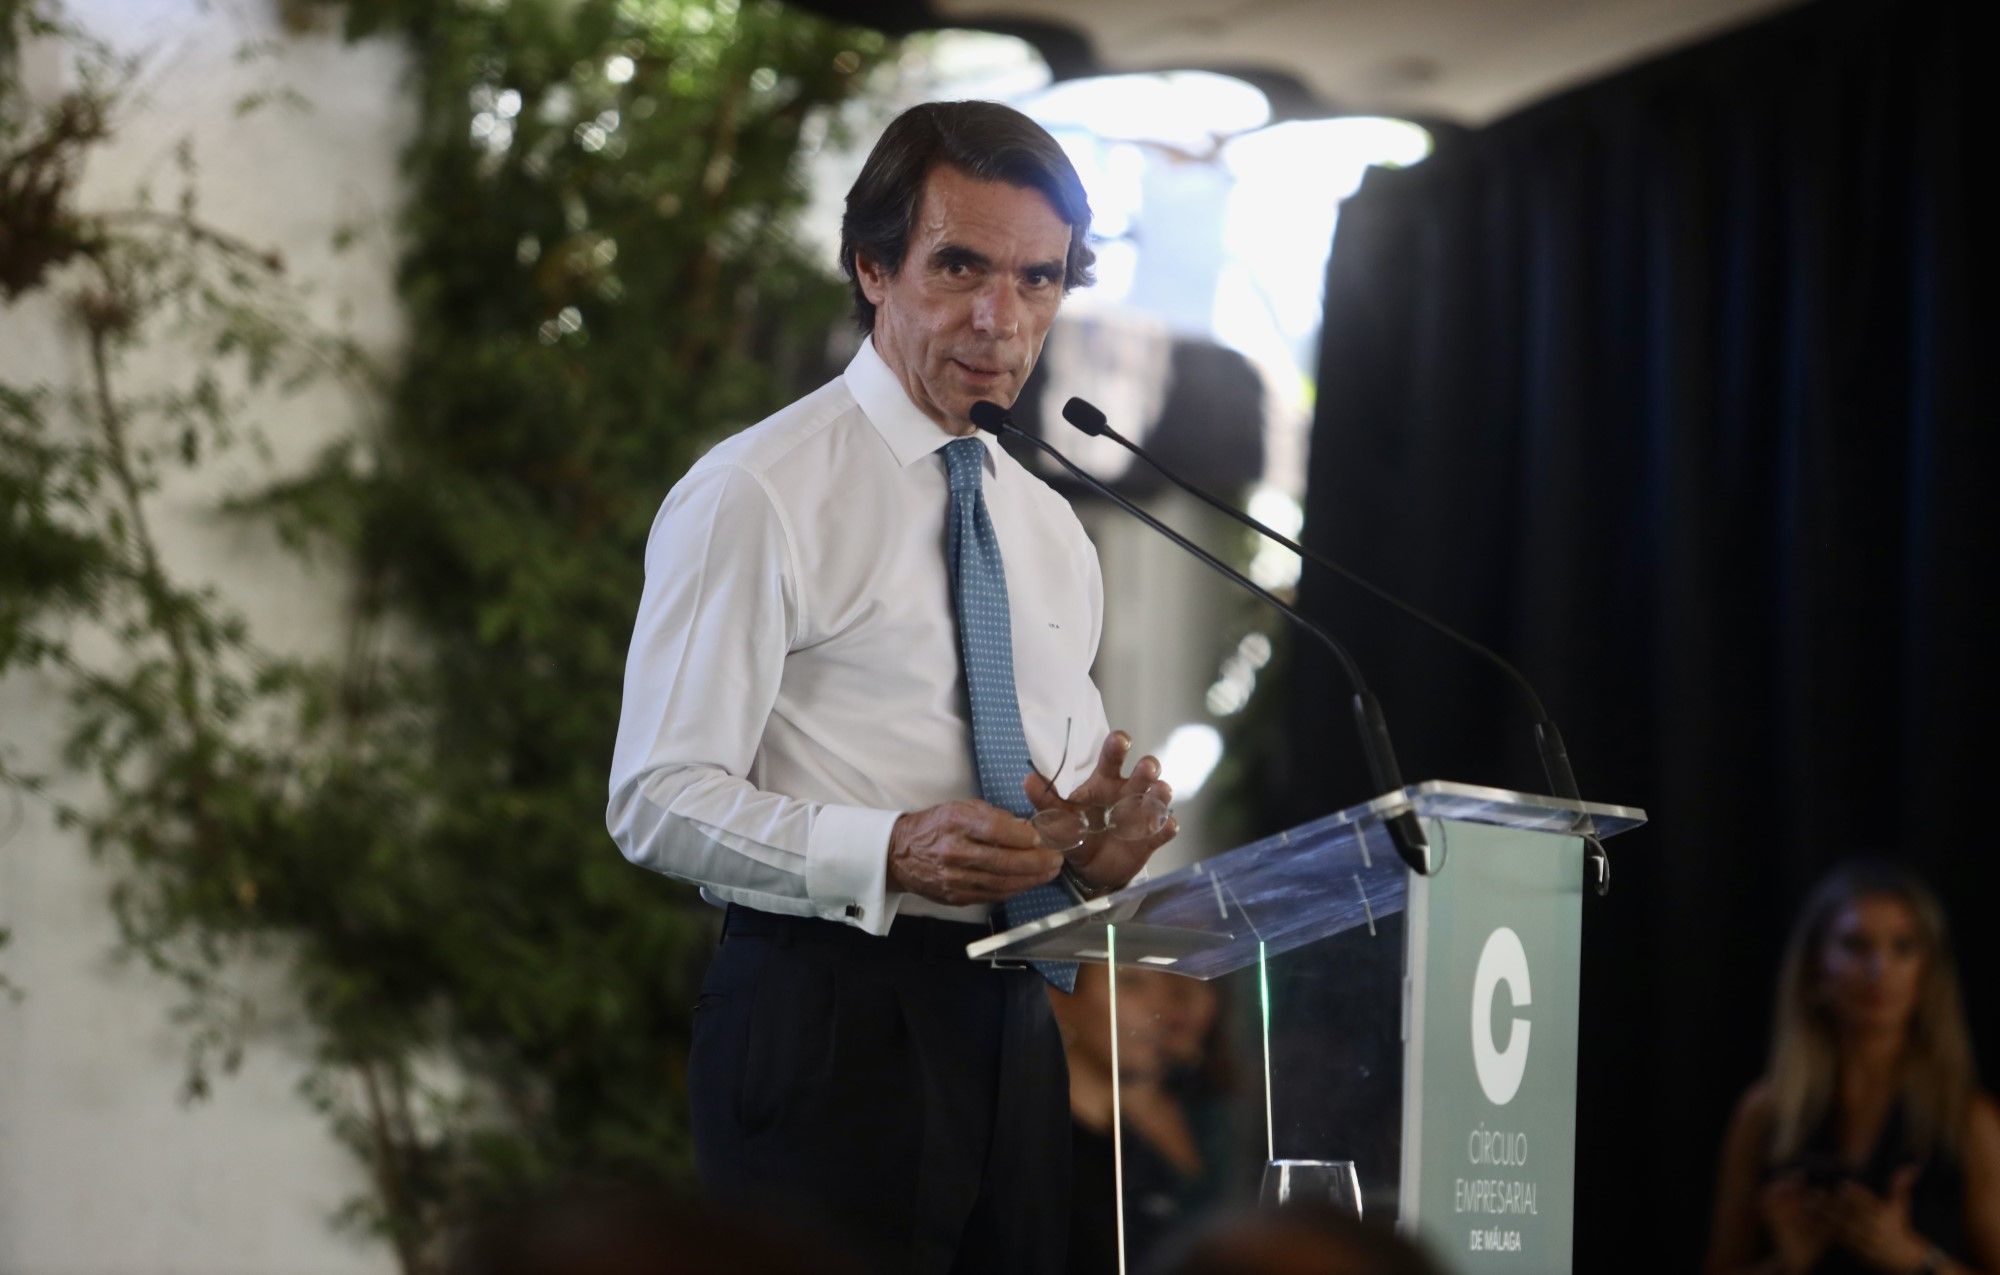 Aznar, en unas jornadas en Pizarra organizada por el Círculo Empresarial de Málaga